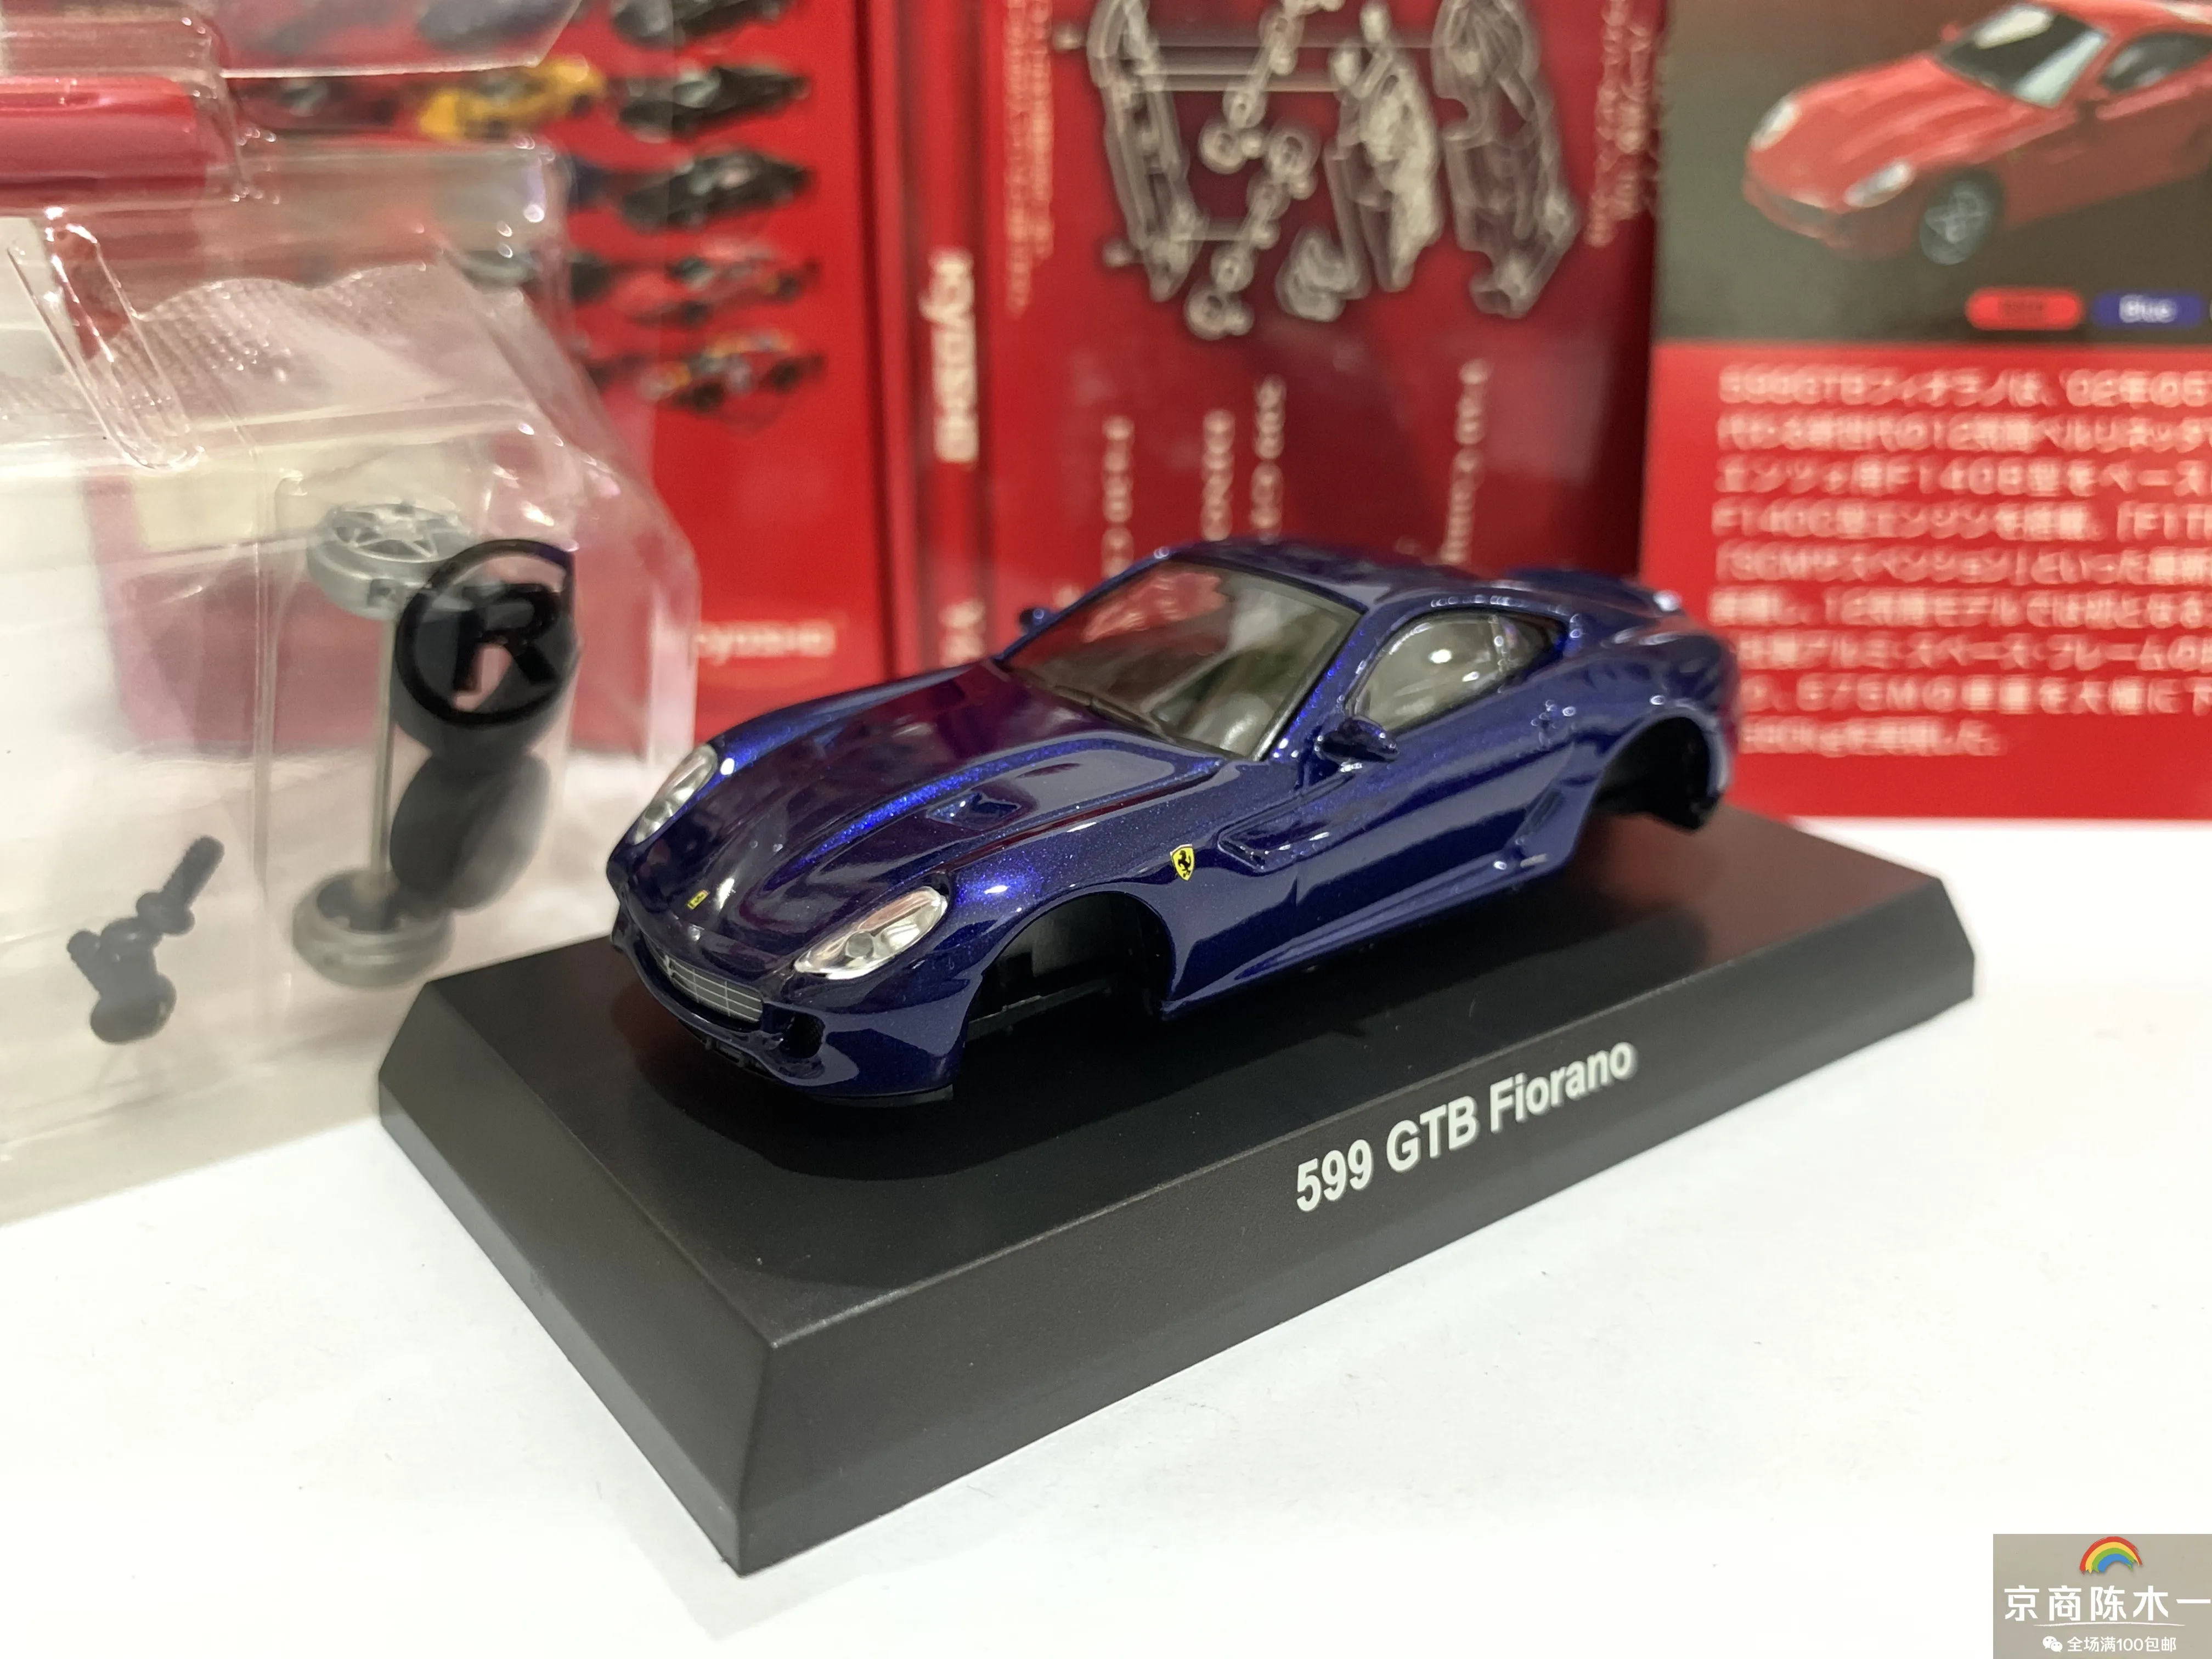 

Коллекция 1/64 KYOSHO для 599 GTB Fiorano из литого сплава, декоративная модель автомобиля, игрушки